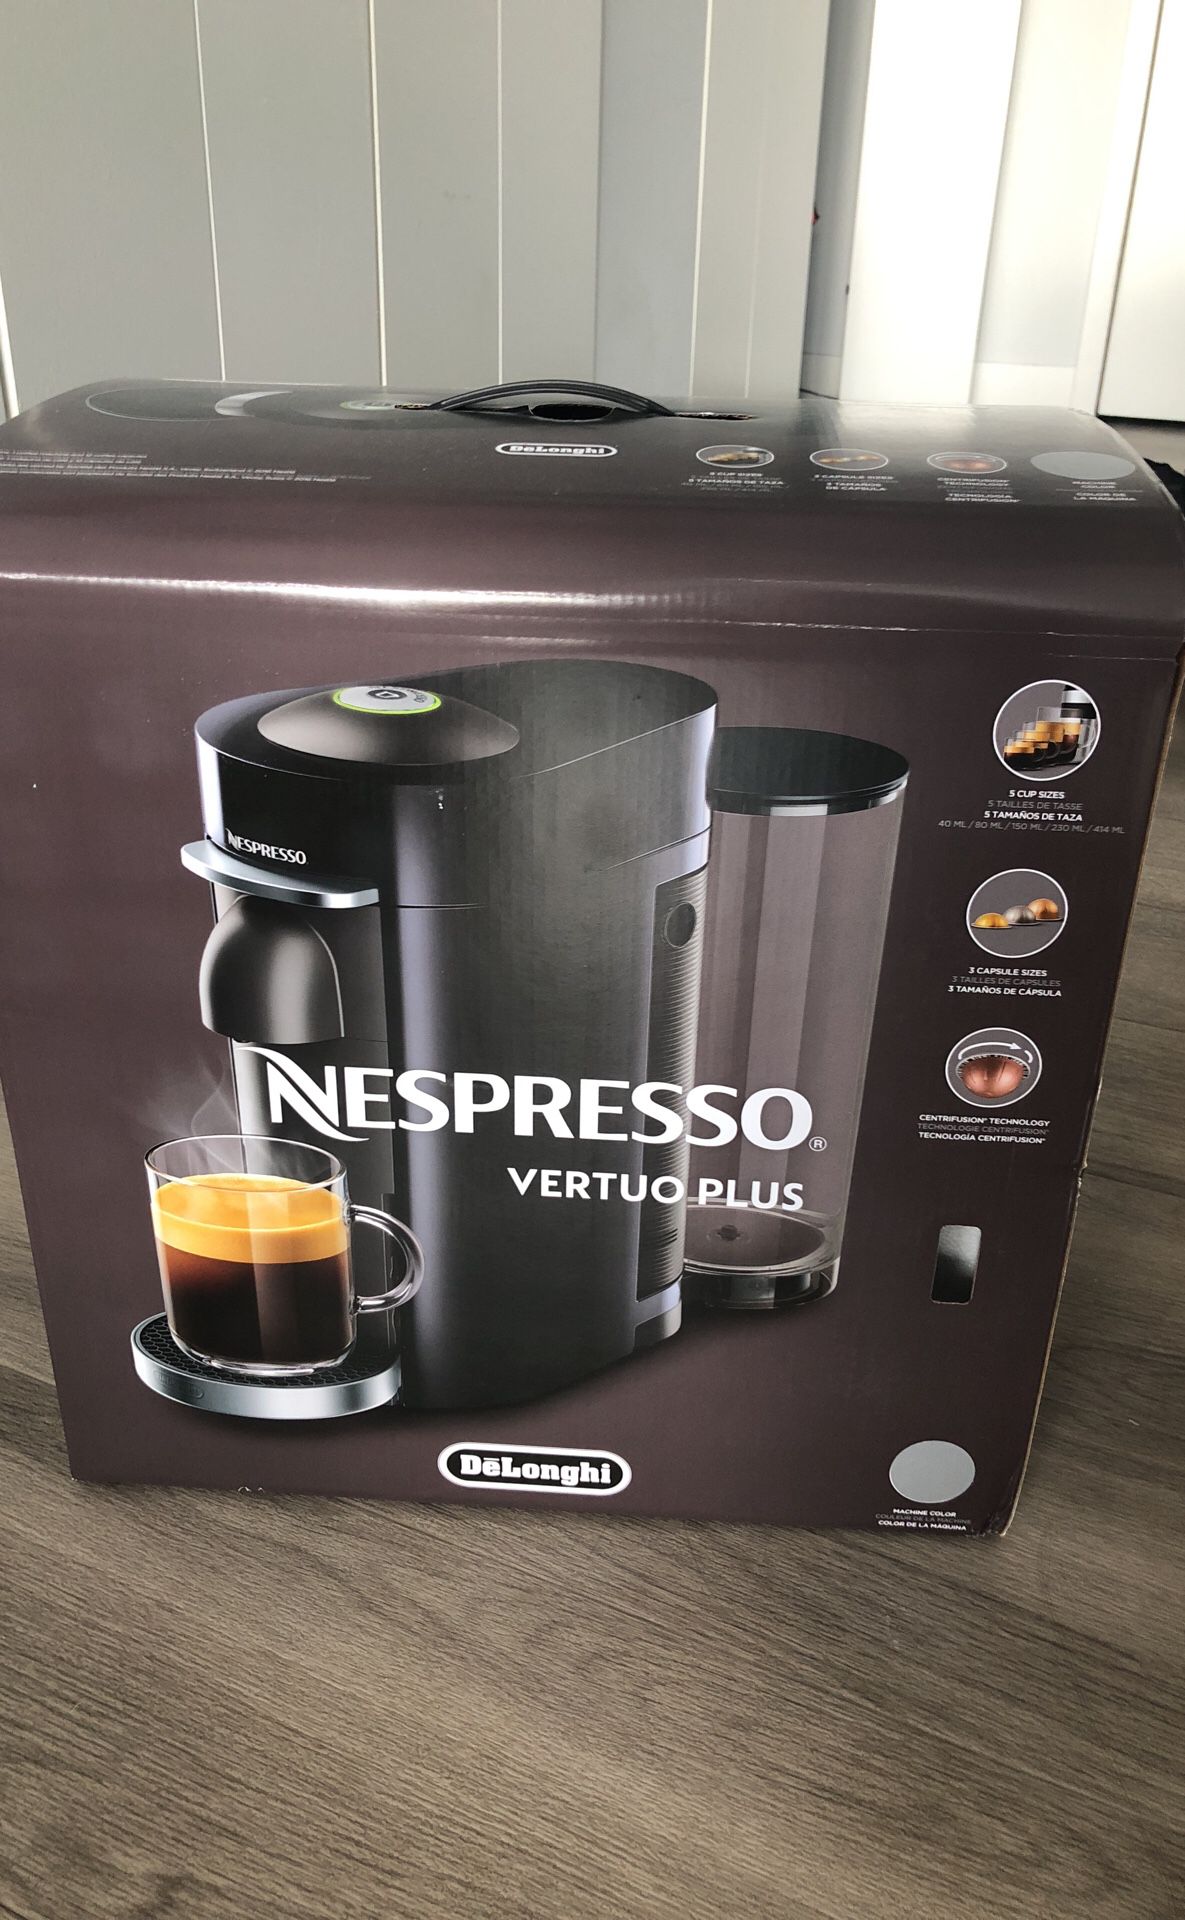 Nespresso Vertuo Plus (new in box)